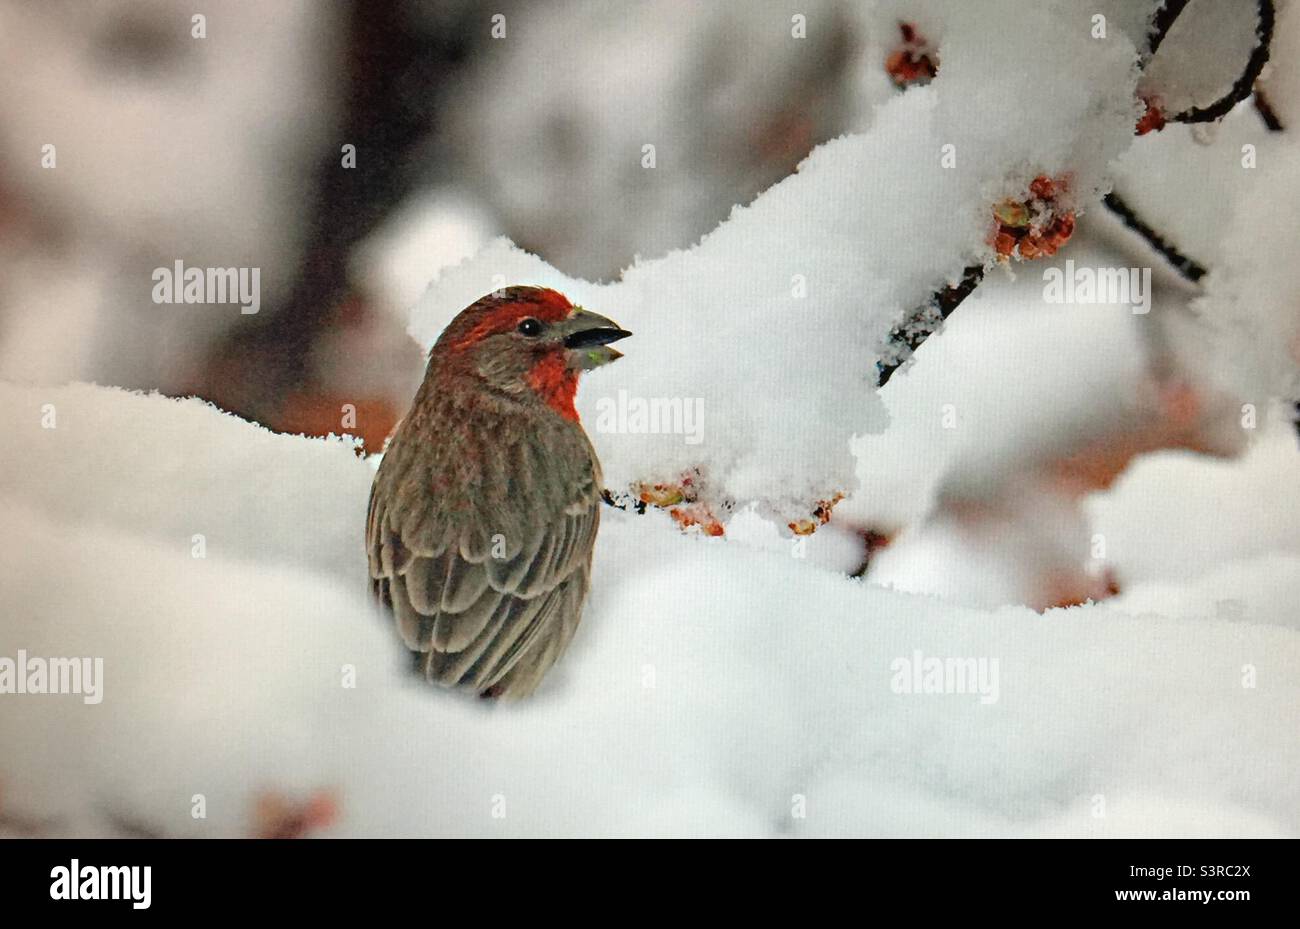 House finch, Bird photography, birder, birding, Backyard photography, North American , birds, wildlife. House finch, early spring, snow Stock Photo